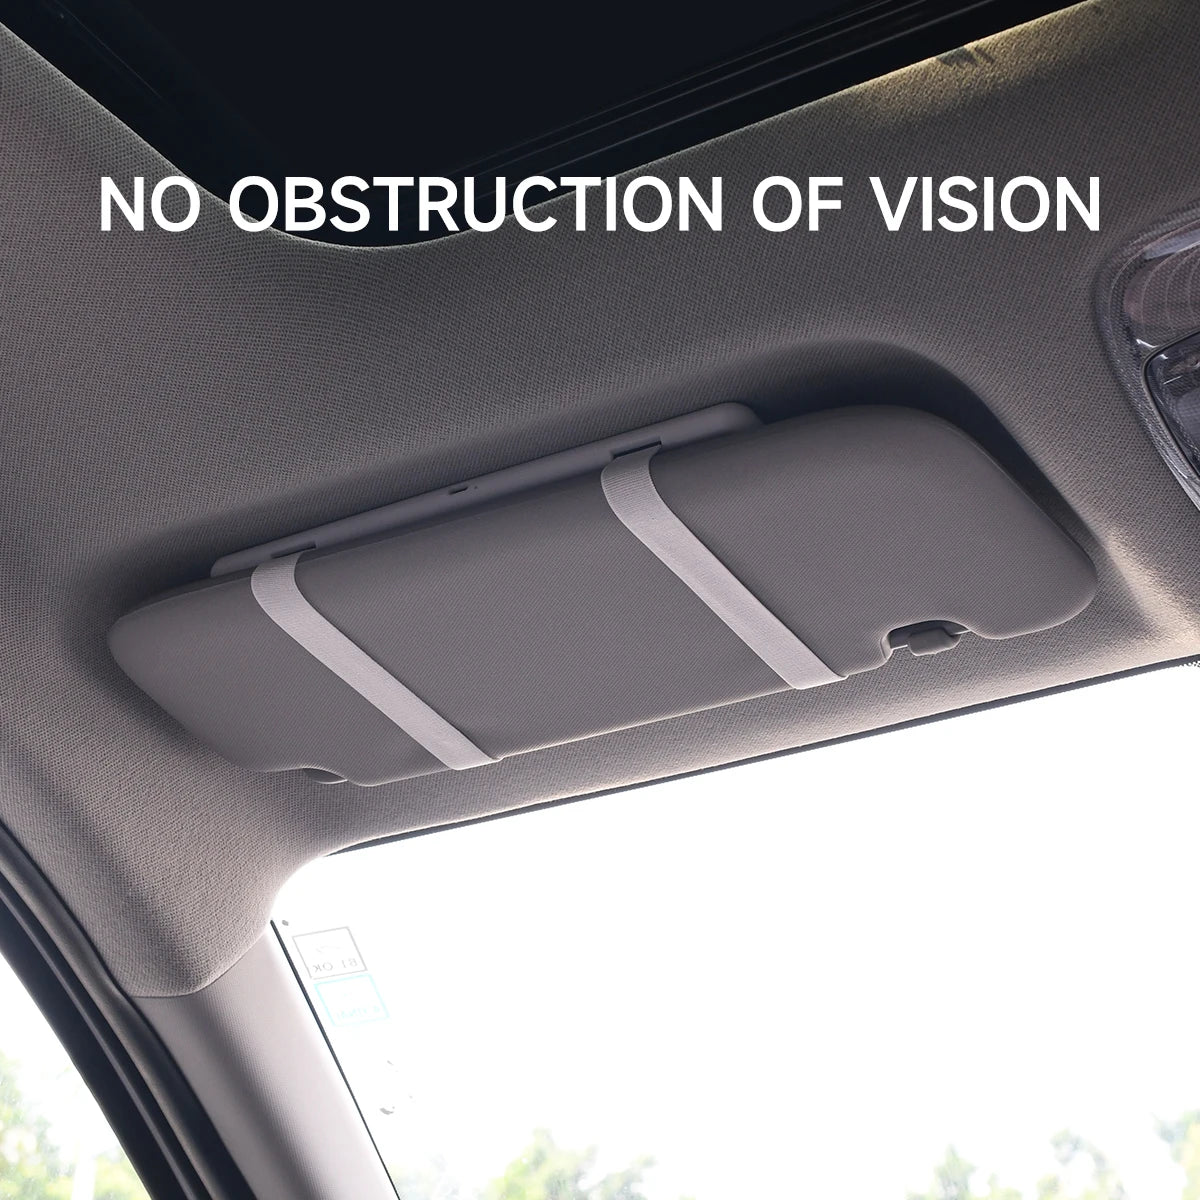 מראה איפור לרכב באיכות HD עם תאורת LED, שלושה רמות התאמה ושליטה מגע, מתאים לשמש ולתאורה פנימית, פתרון מושלם לאיפור בדרכים!"